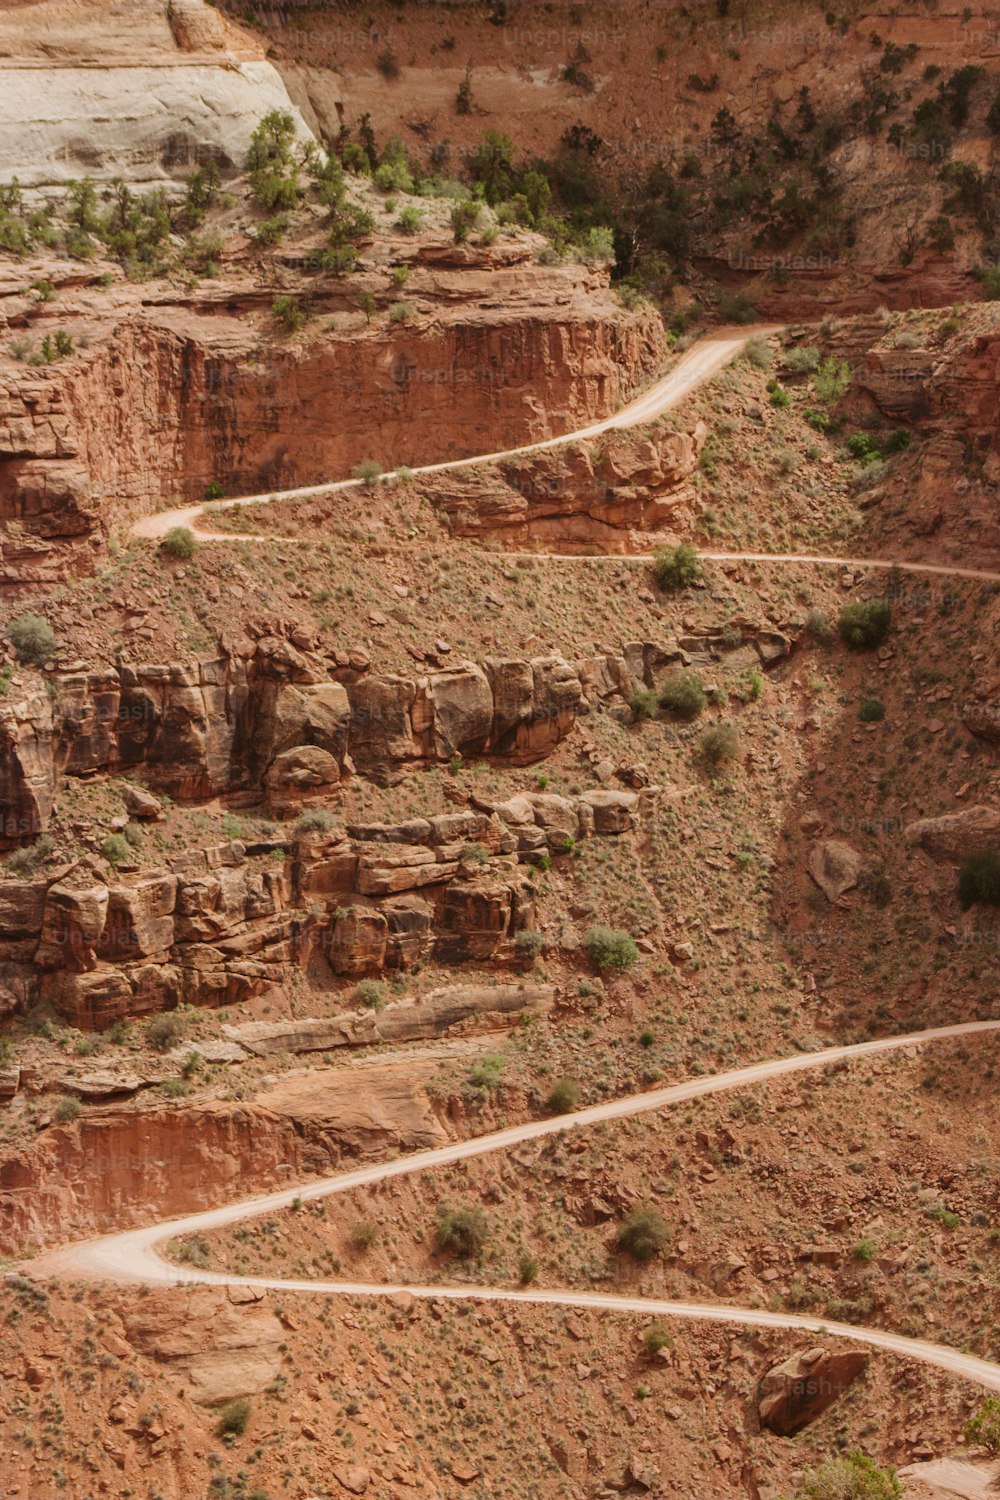 협곡 한가운데에 있는 구불구불한 비포장 도로